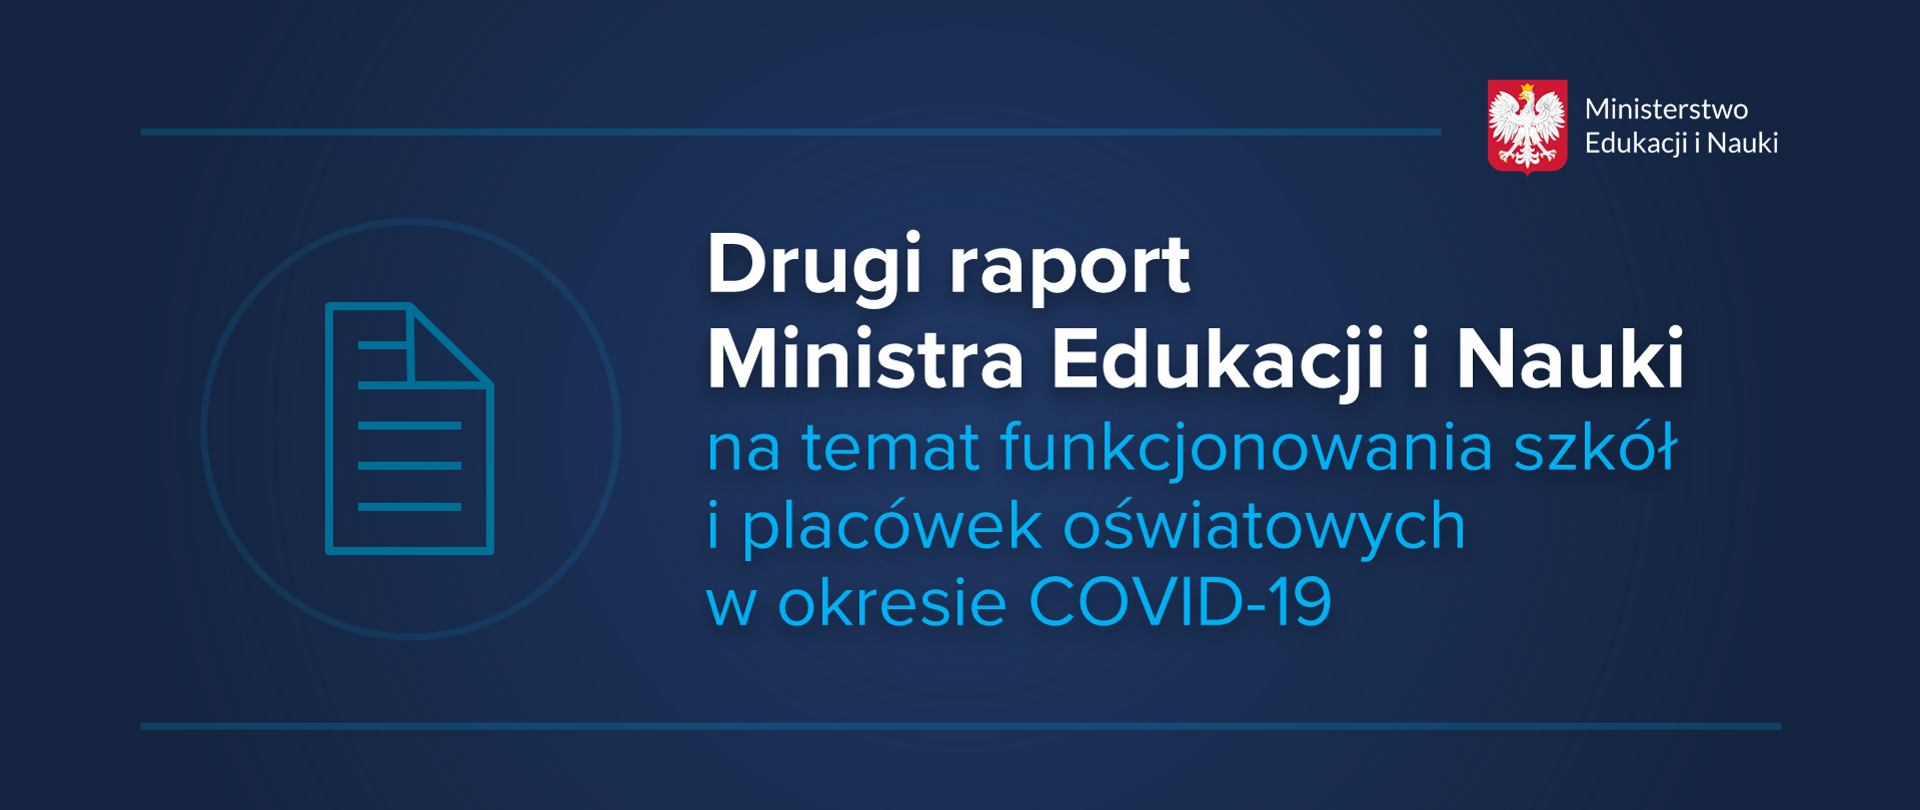 Drugi raport Ministra Edukacji i Nauki na temat funkcjonowania szkół i placówek oświatowych w okresie COVID-19
